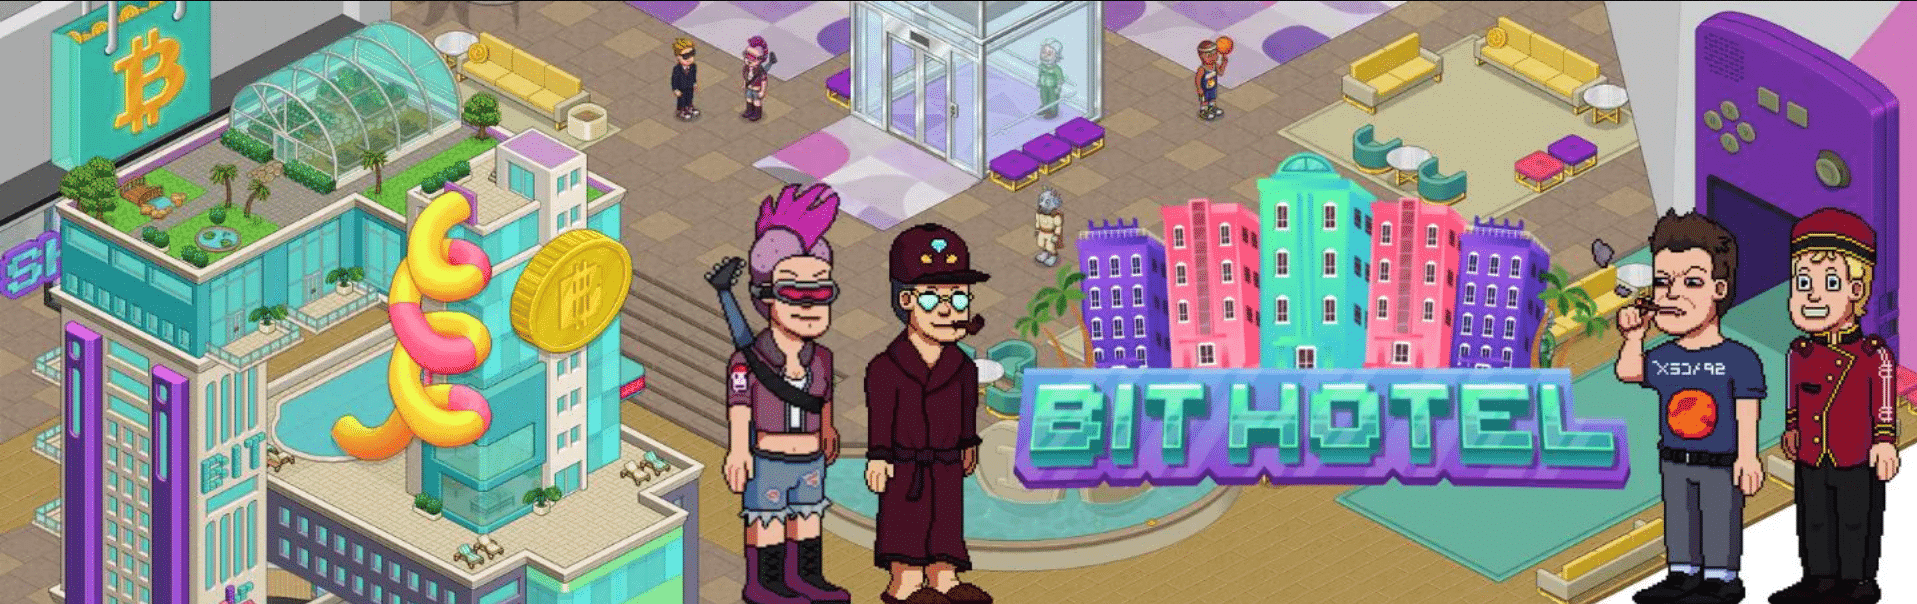 Bit Hotel is een online NFT-game op het Ferrum Network met sociale dynamiek waarbij spelers NFT-items verzamelen om beloningen te verdienen.